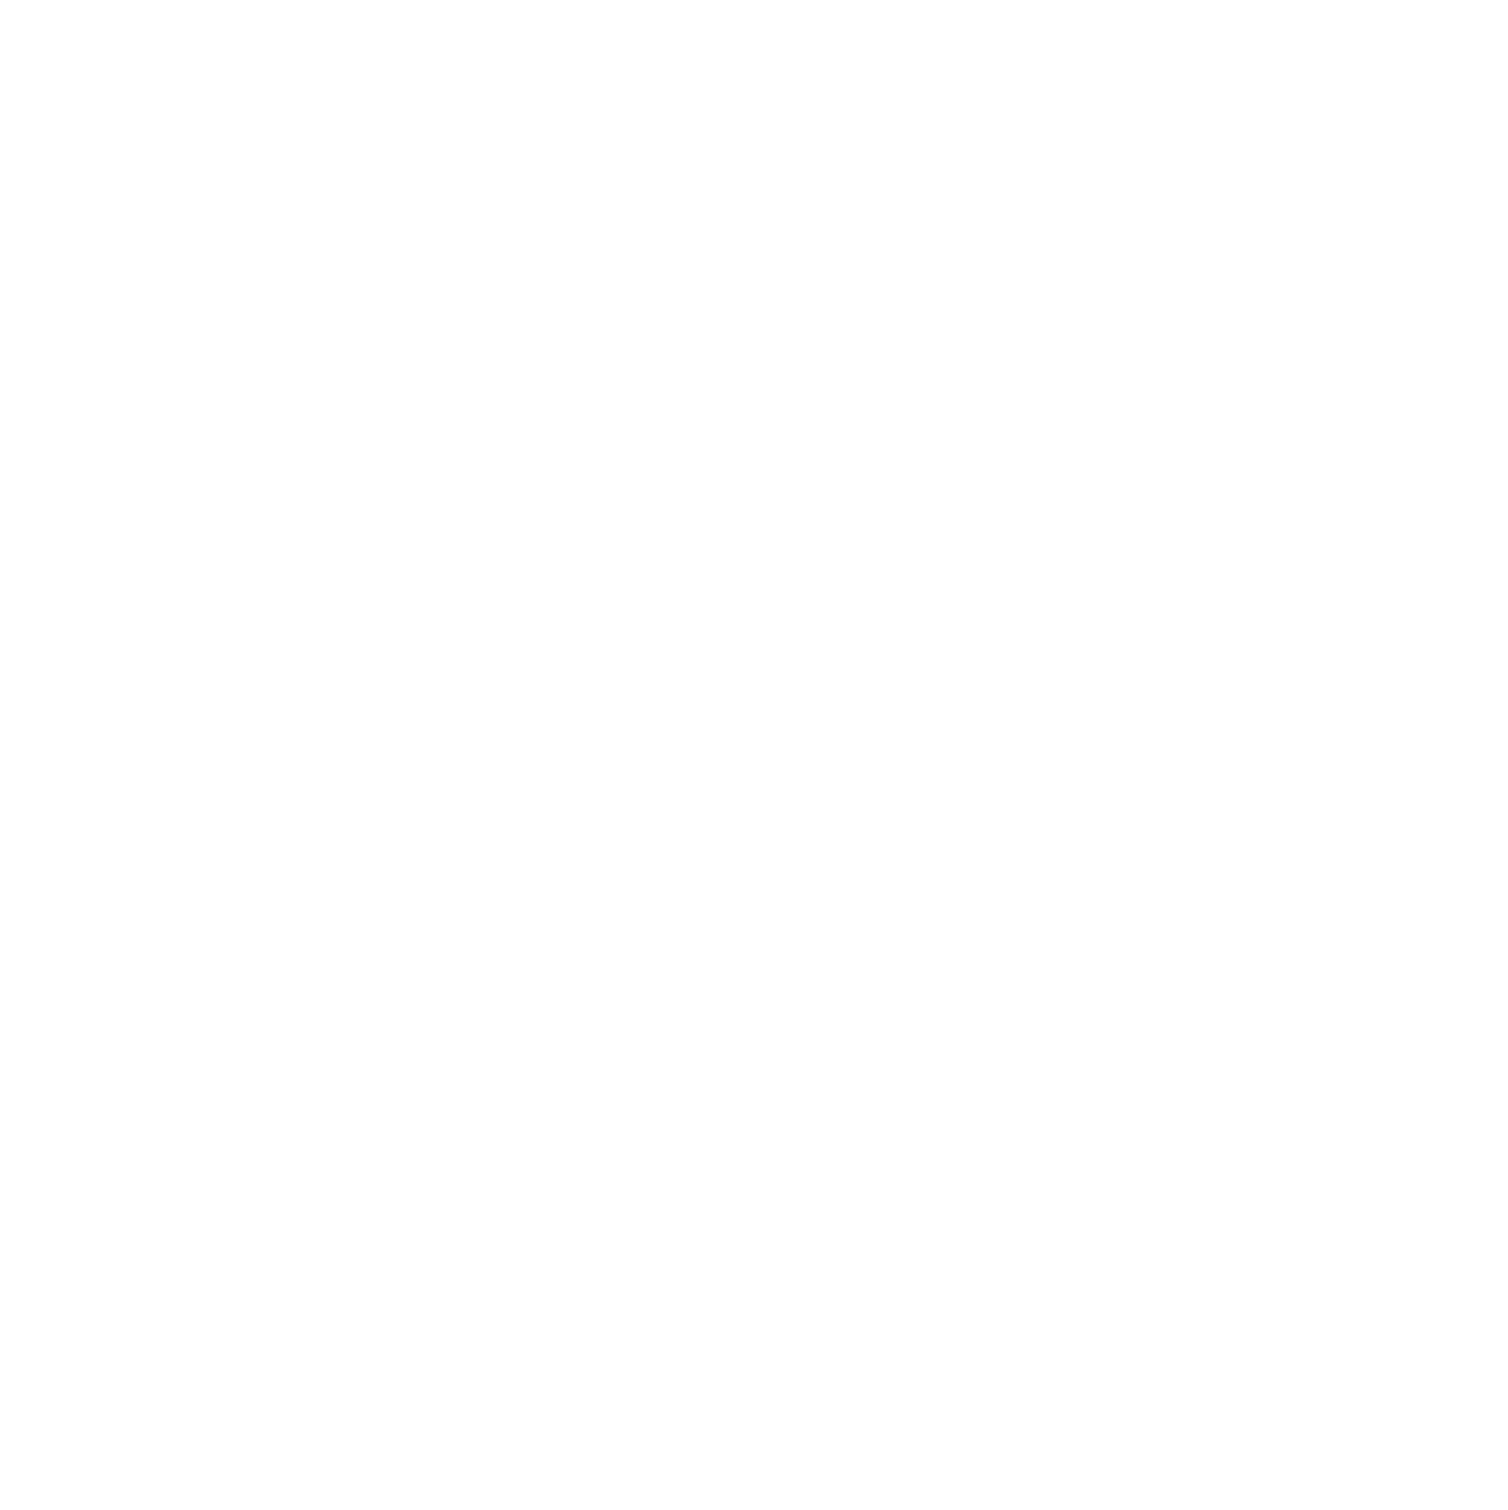 PropertyGuru logo for dark backgrounds (transparent PNG)